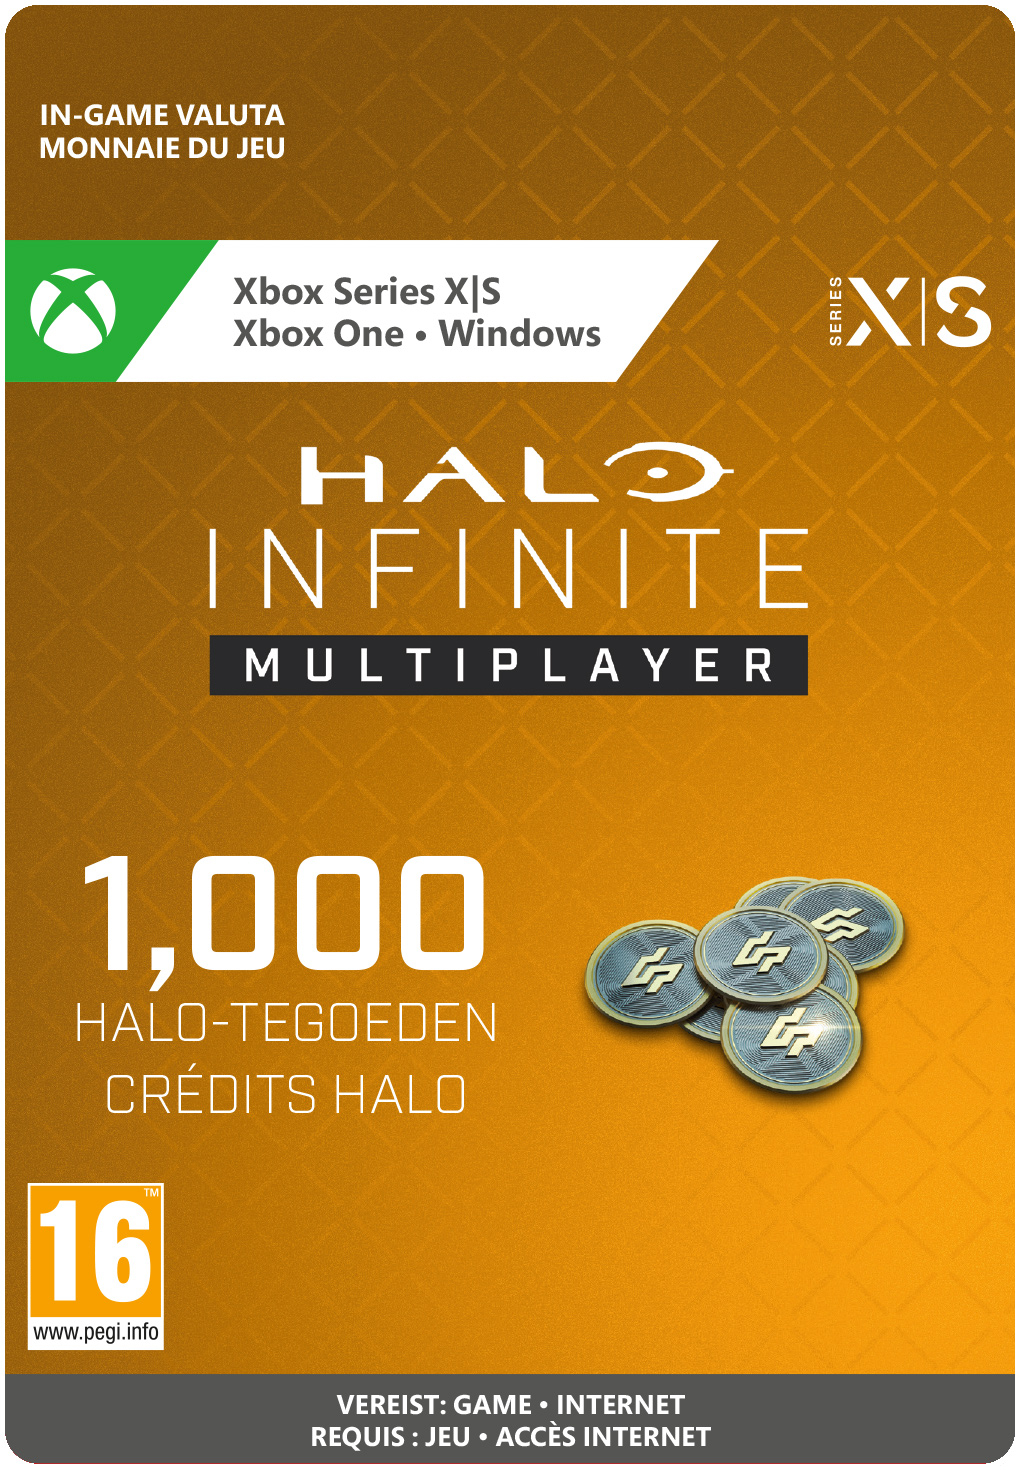 1000 Xbox Halo Credits (direct digitaal geleverd) XboxLiveKaarten.nl